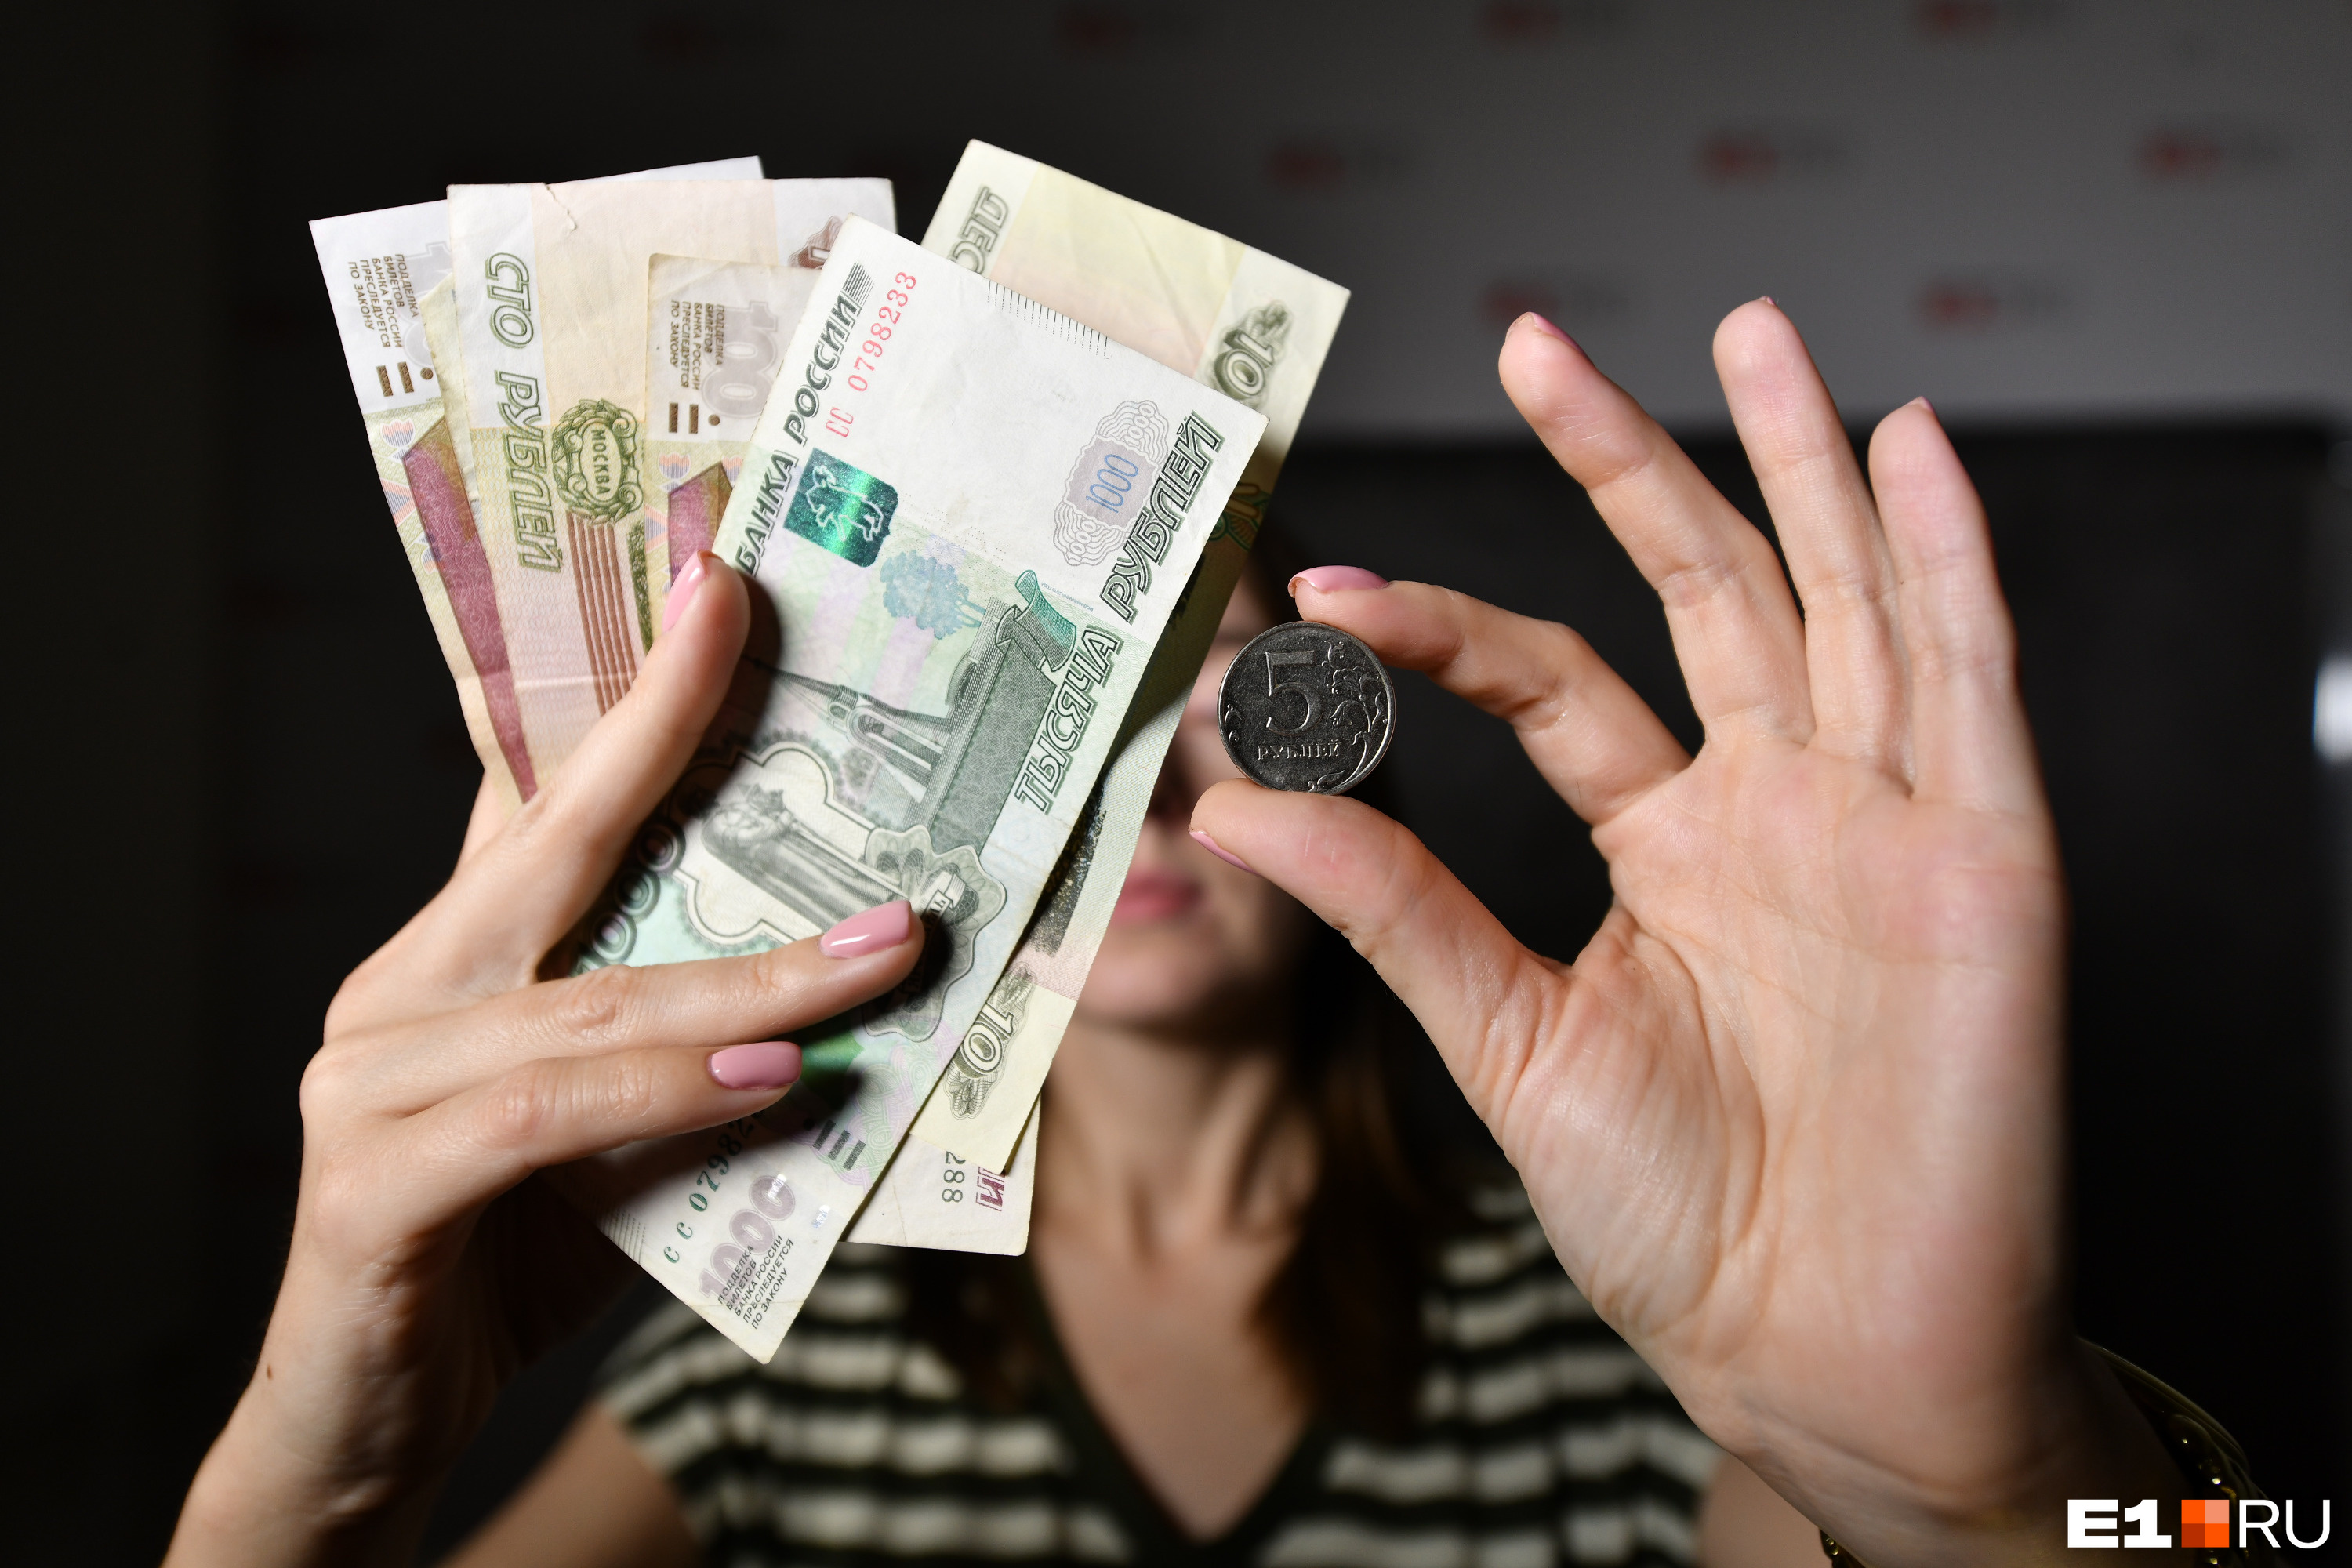 Как разбогатеть: советы, как научиться копить деньги и перестать тратить  лишнее - 13 марта 2021 - e1.ru